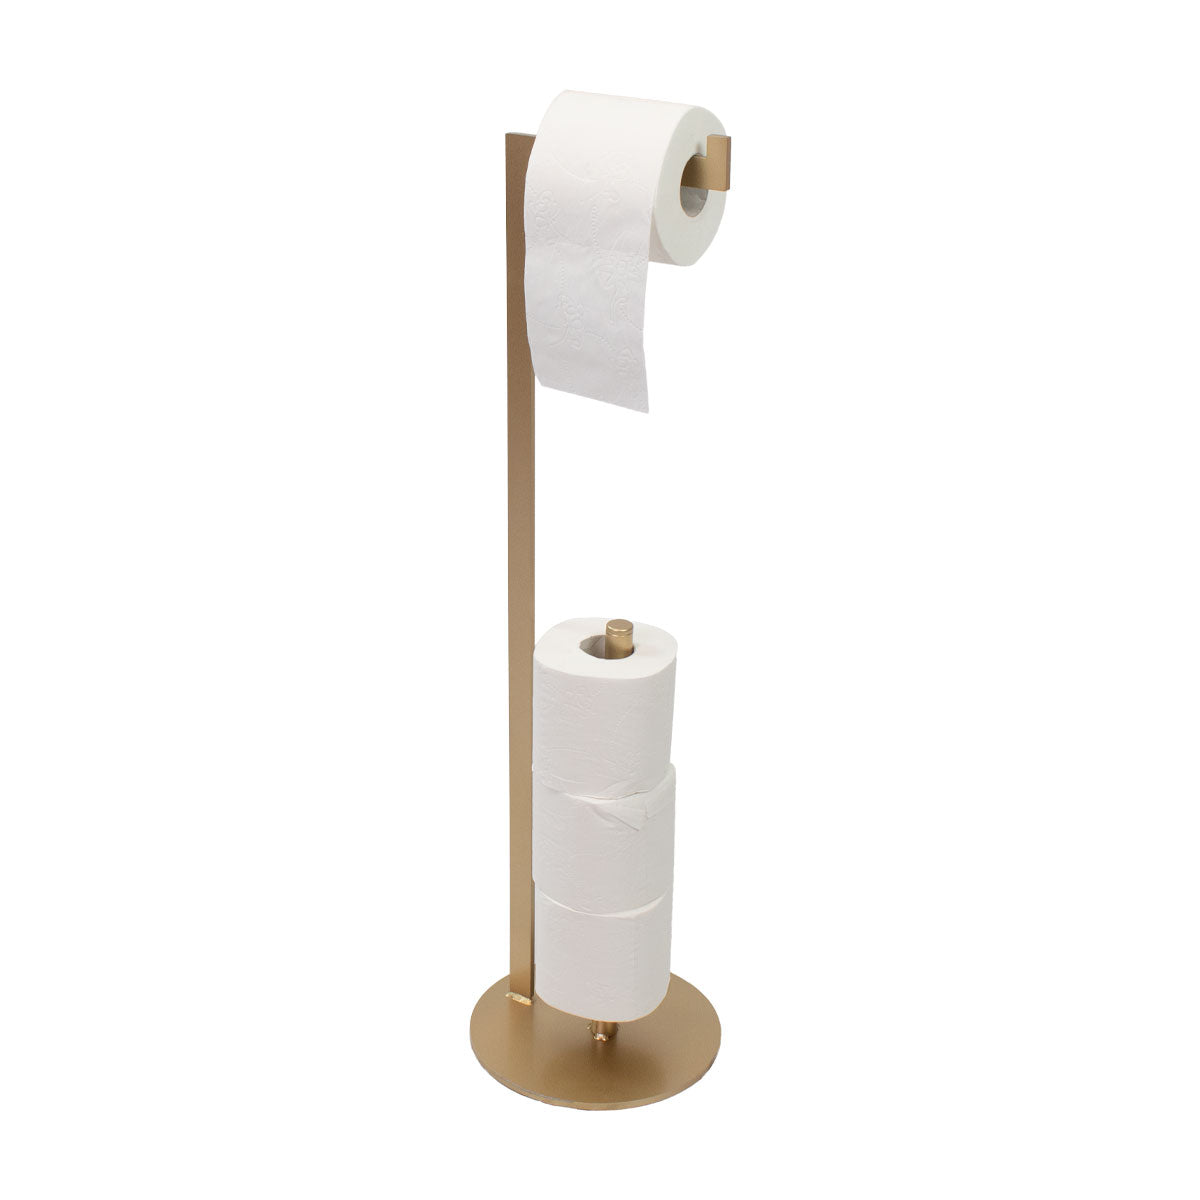 Toilettenpapier Ständer 'Zoe' | Stahlblech 6 mm lackiert | in verschiedenen Ausführungen | Manufactured in Europe